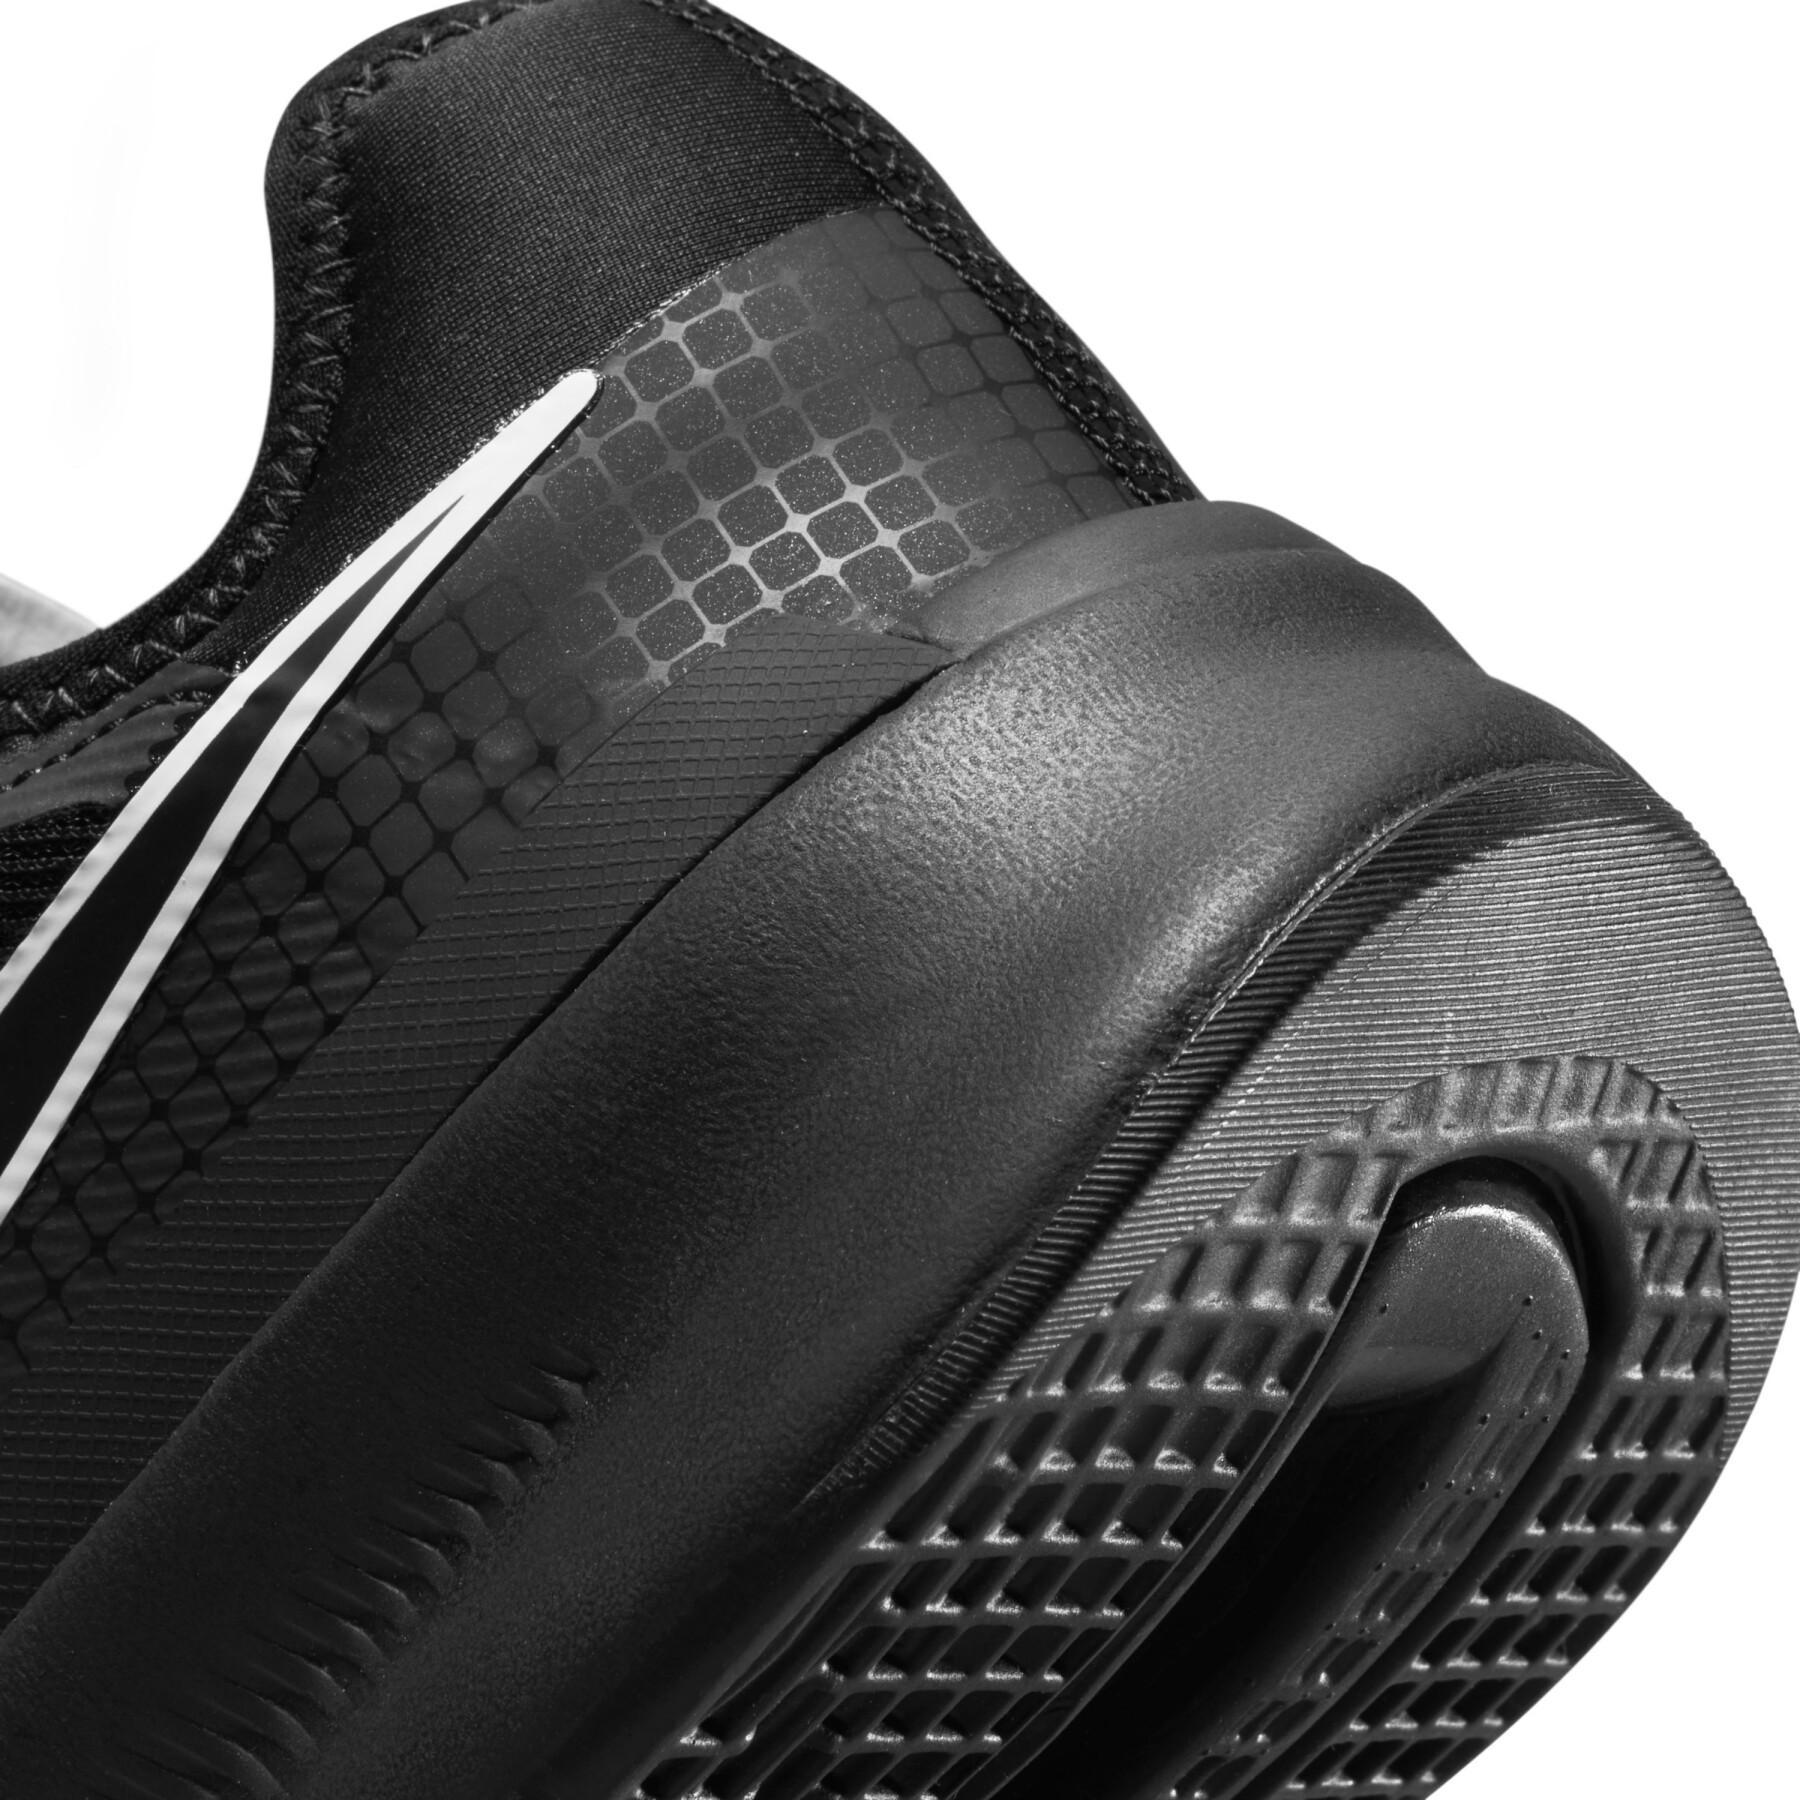 Sapatos de treino cruzado para mulheres Nike Air Zoom SuperRep 3